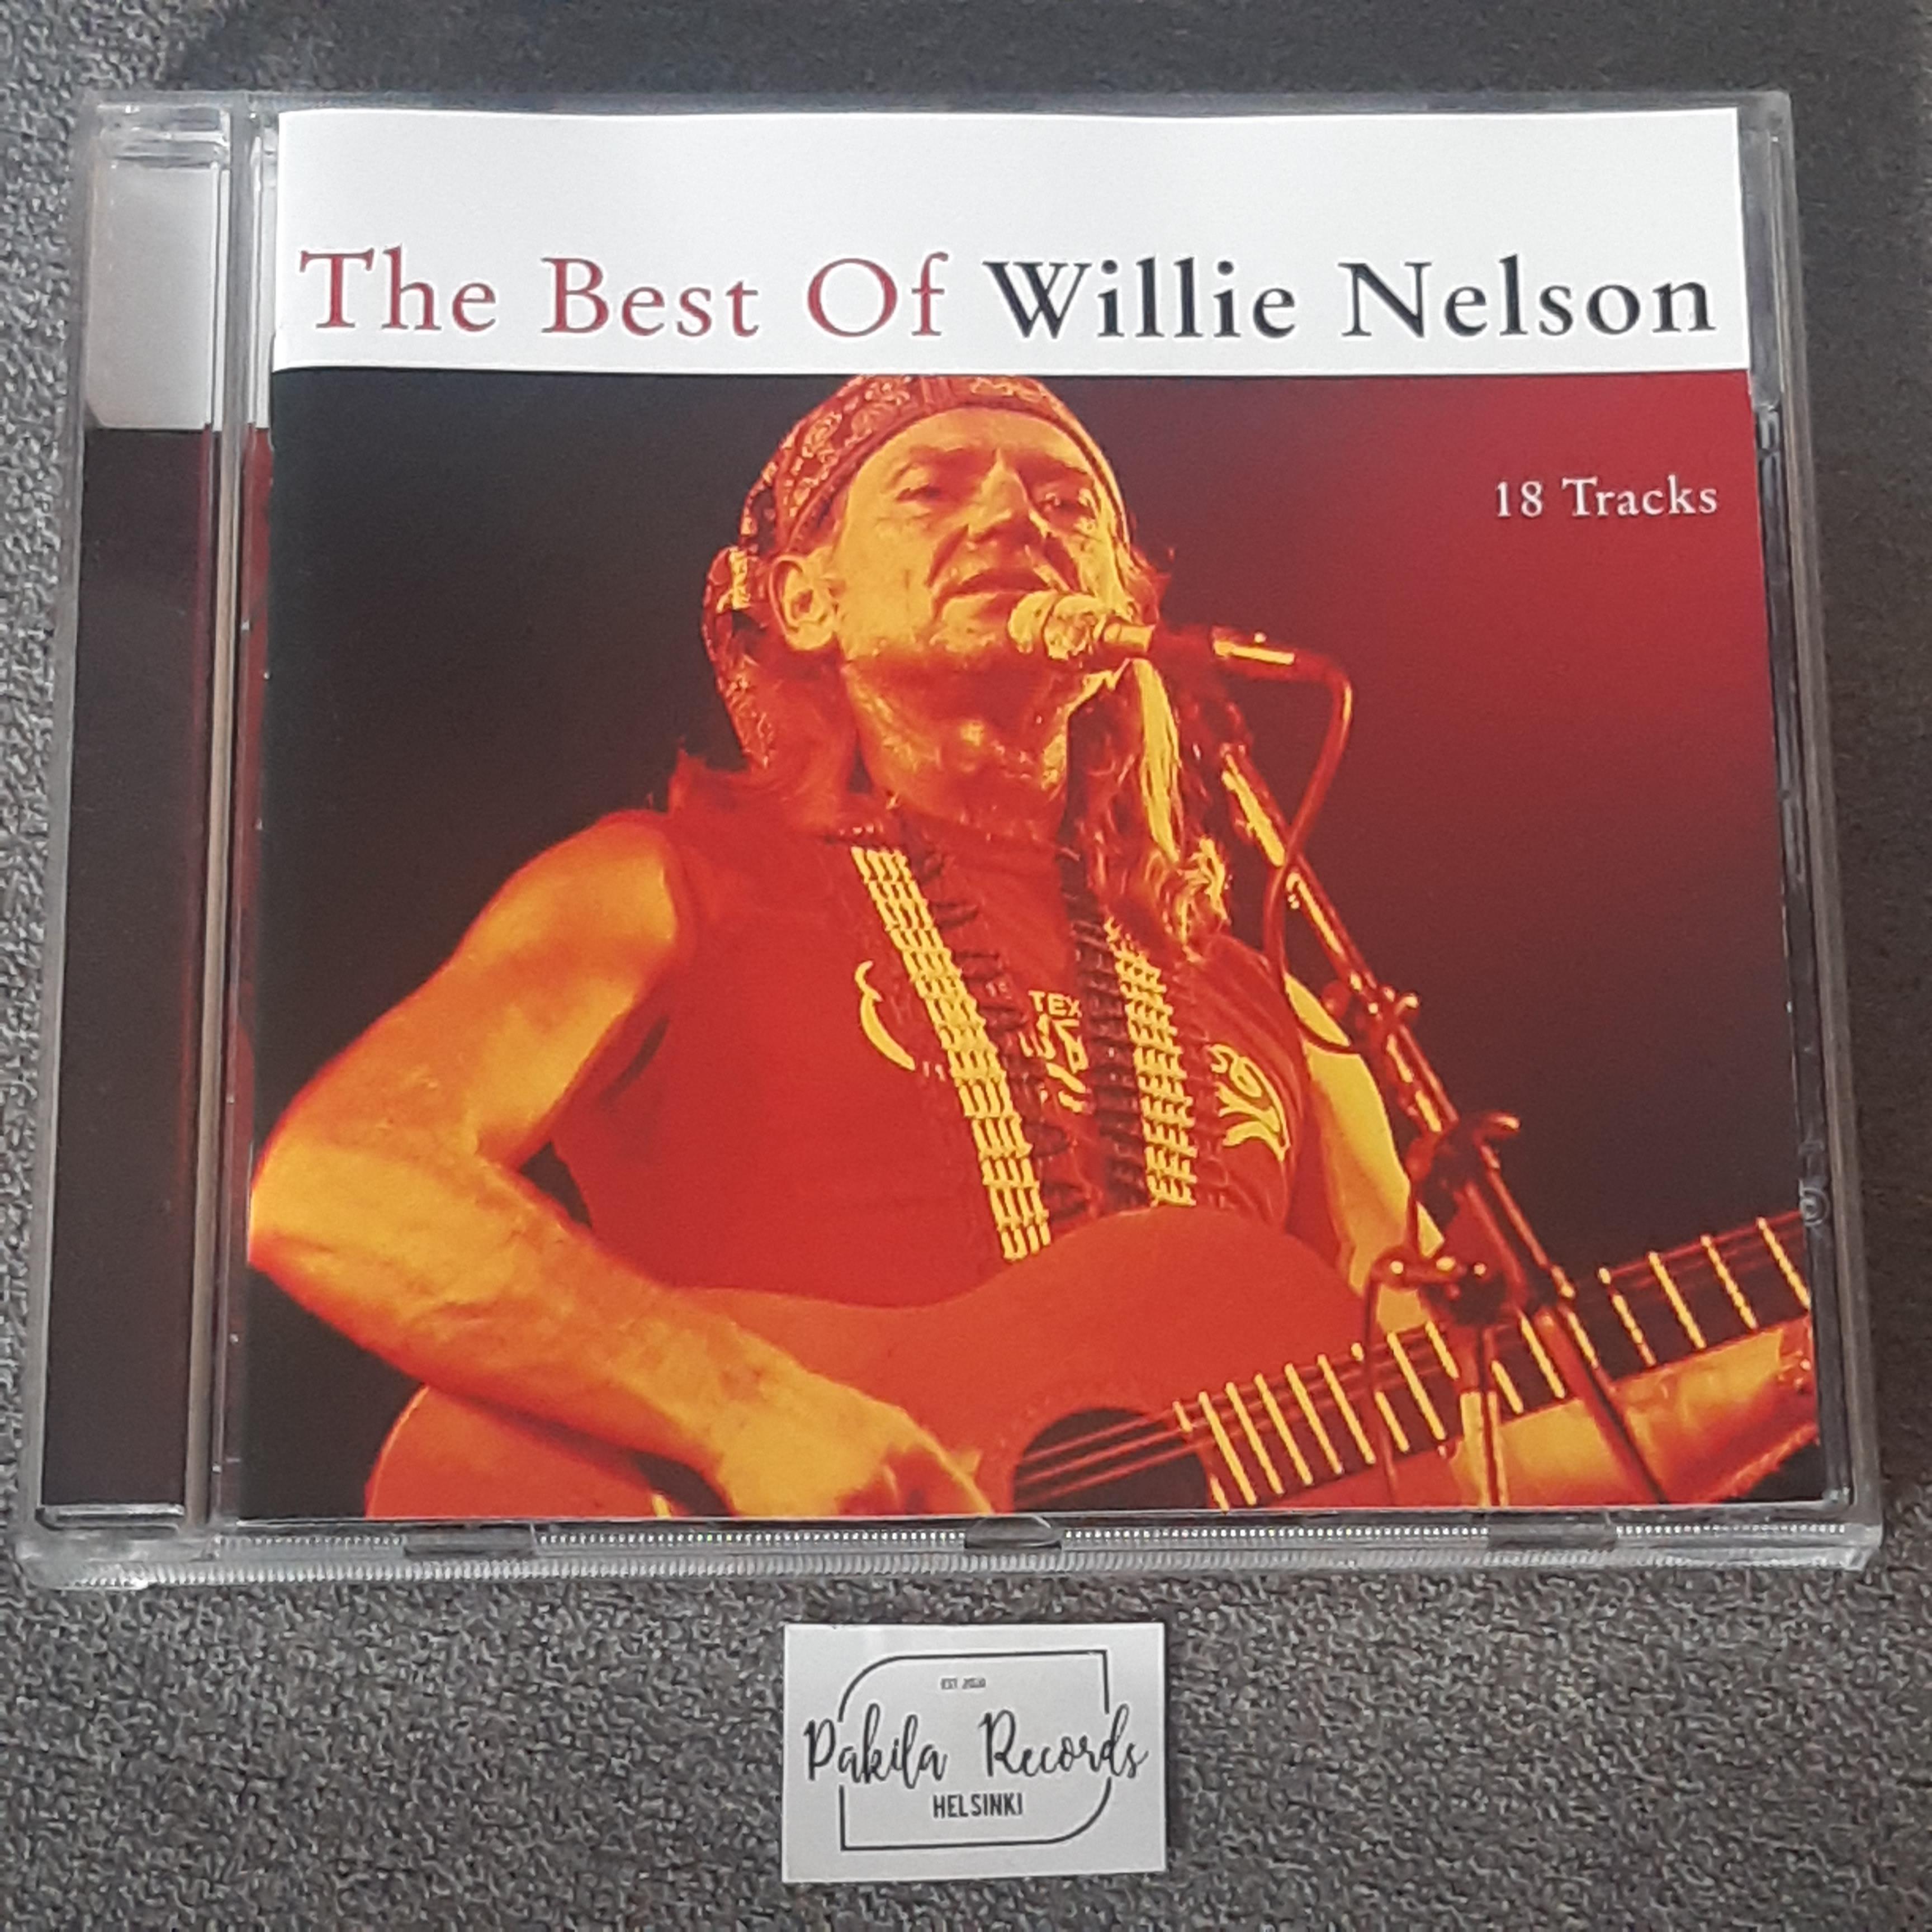 Willie Nelson - The Best Of - CD (käytetty)